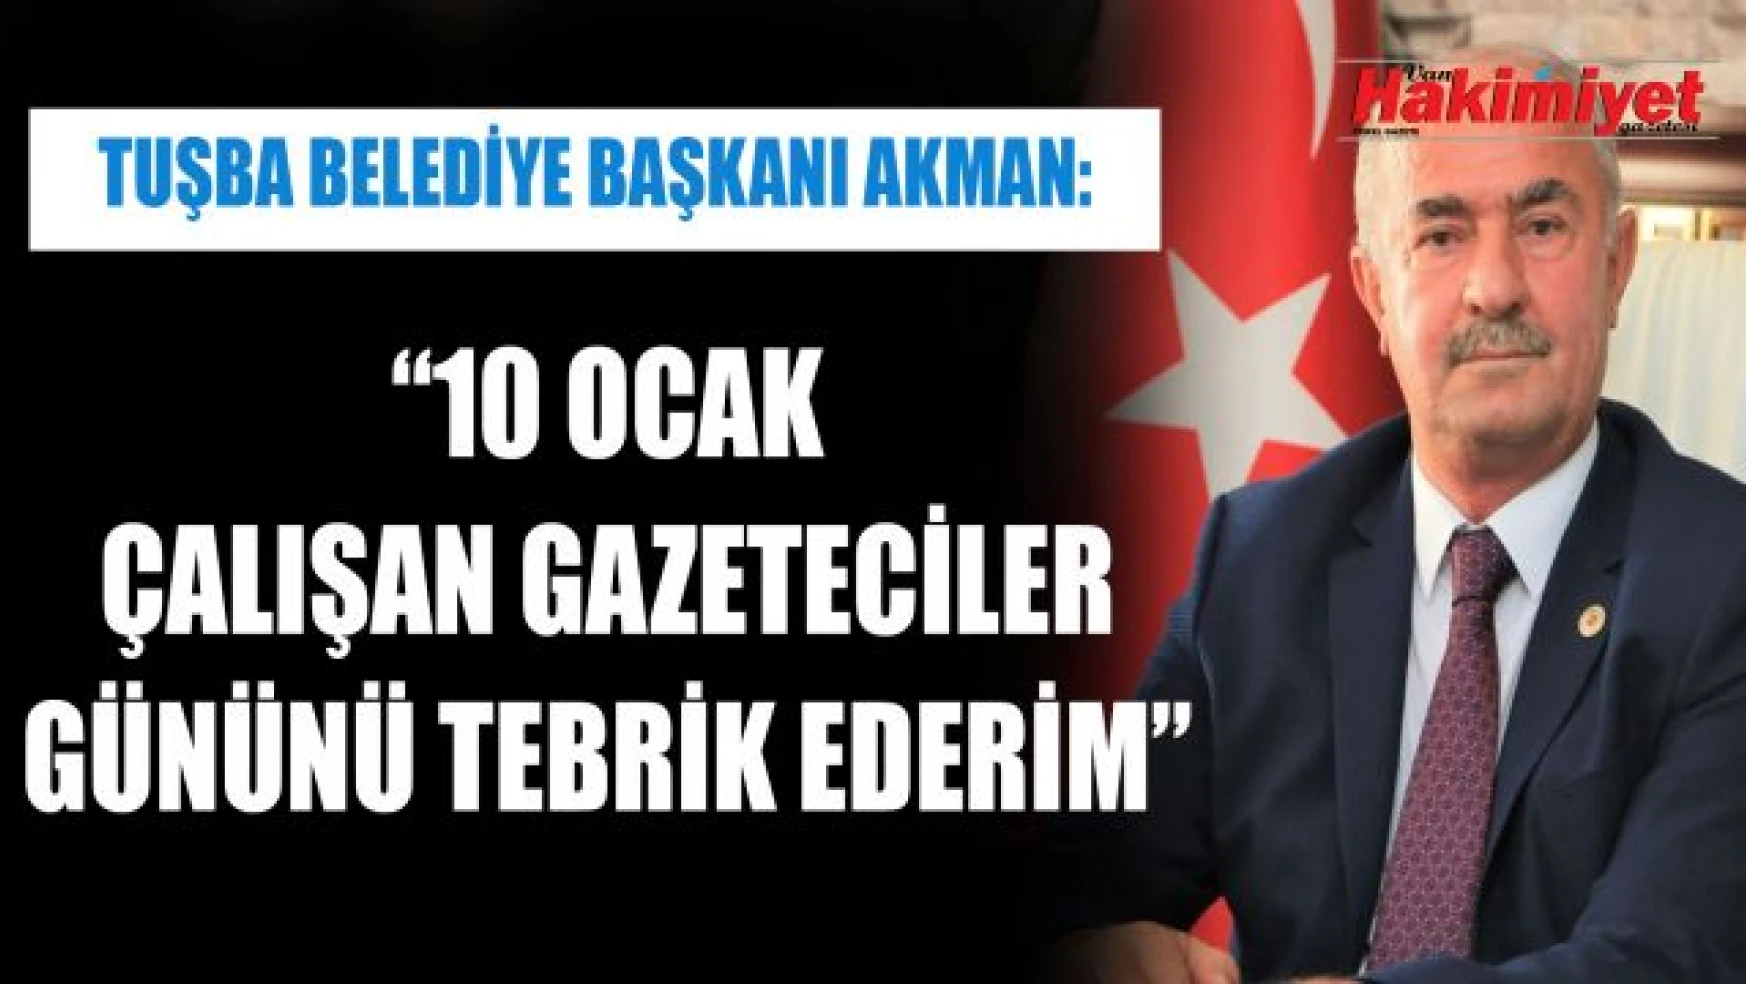 Tuşba Belediye Başkanı Salih Akman'ın '10 Ocak Çalışan Gazeteciler Günü' mesajı